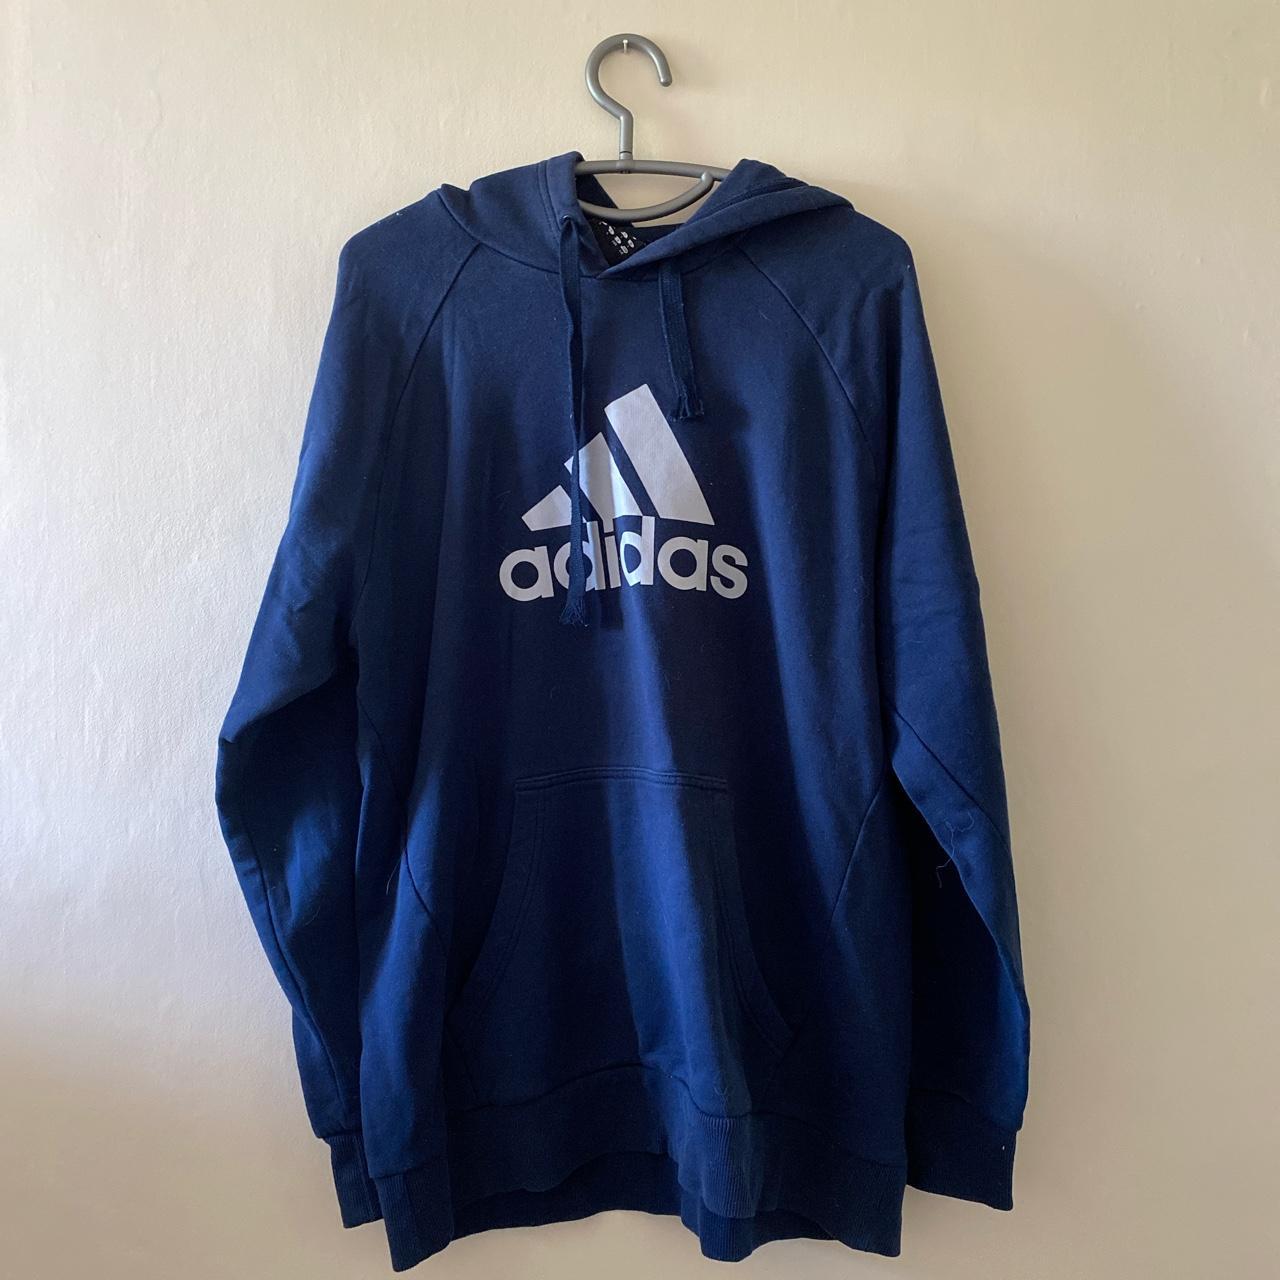 Adidas vintage blue hoodie - Depop